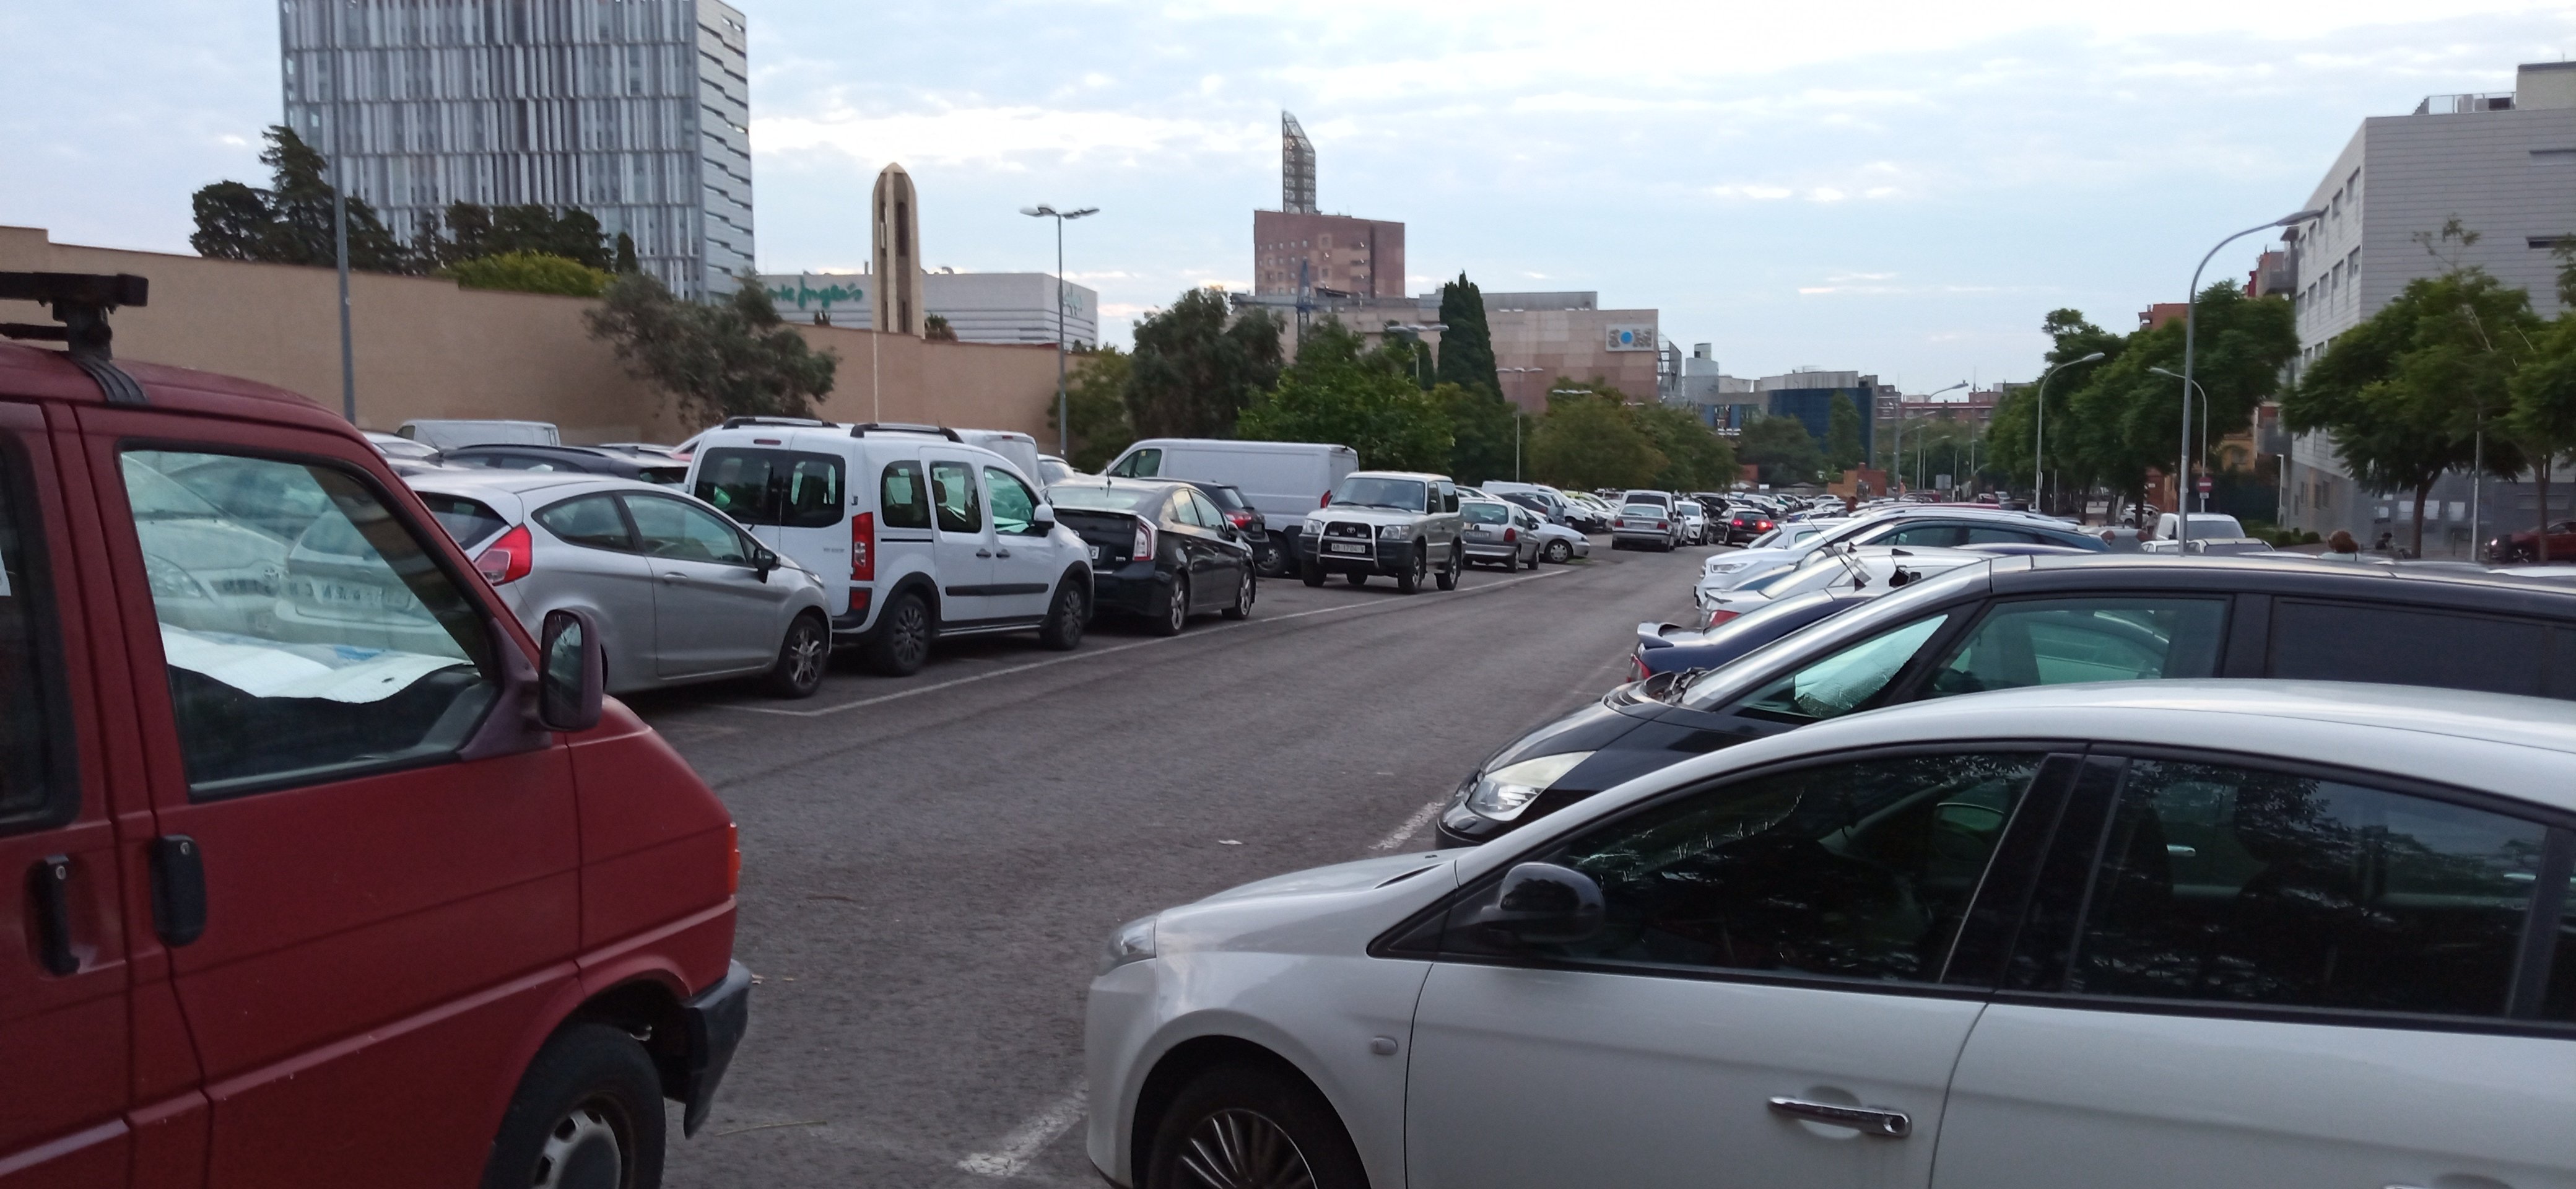 Un tanatori més i 300 aparcaments menys a l'entorn del cementiri de Sant Andreu